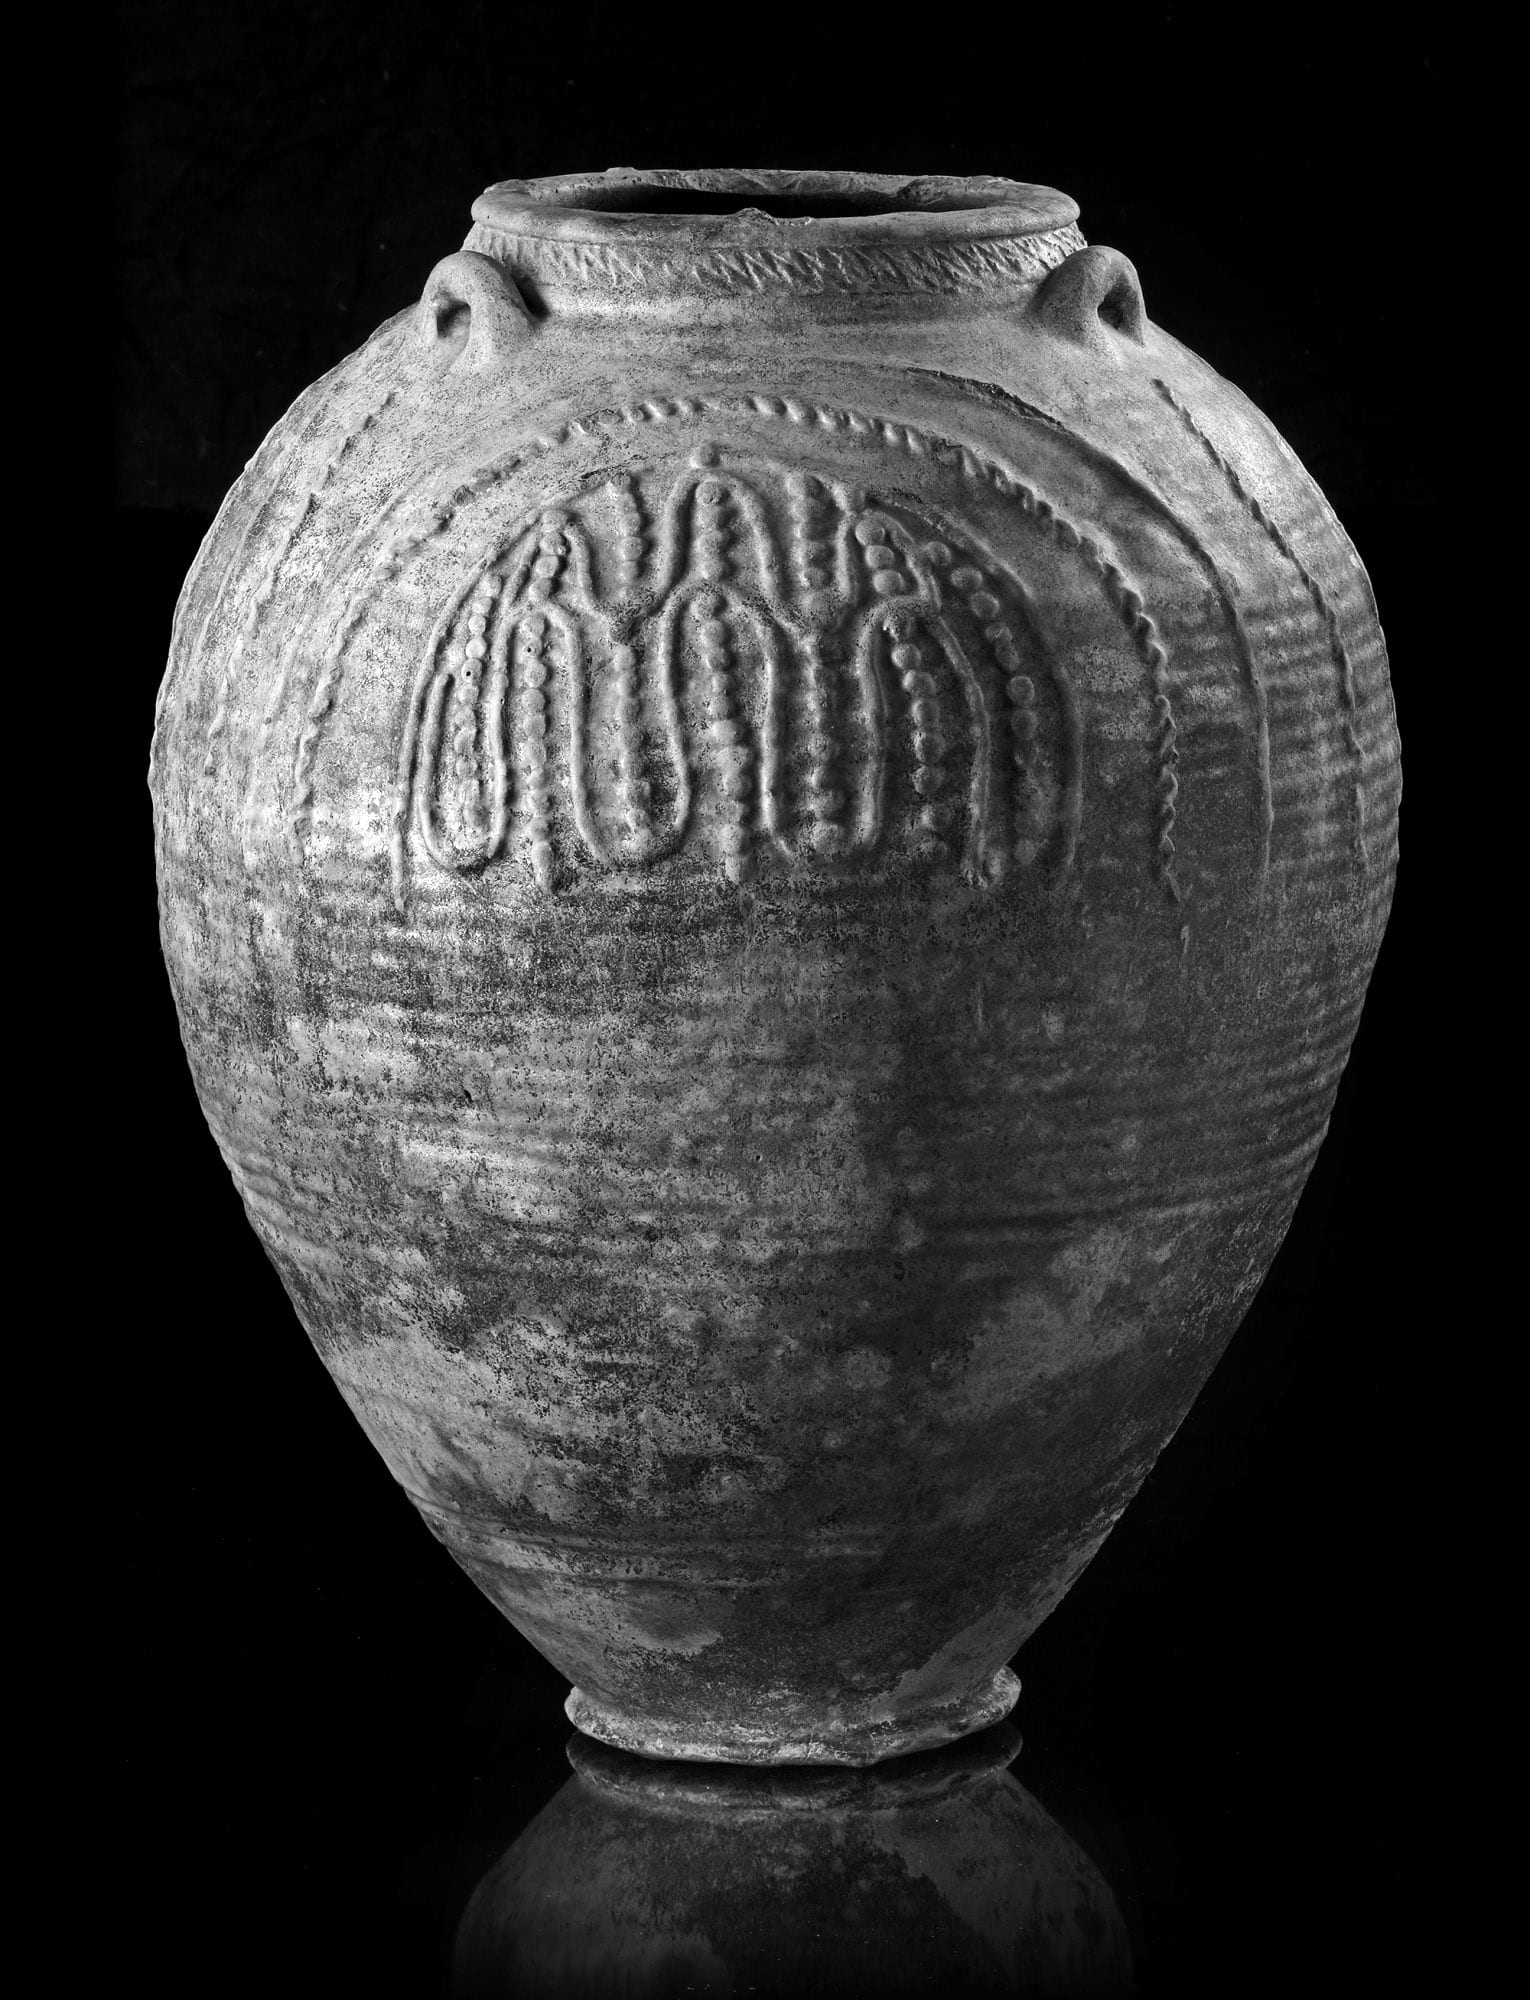 Example of Islamic pottery from Sassania